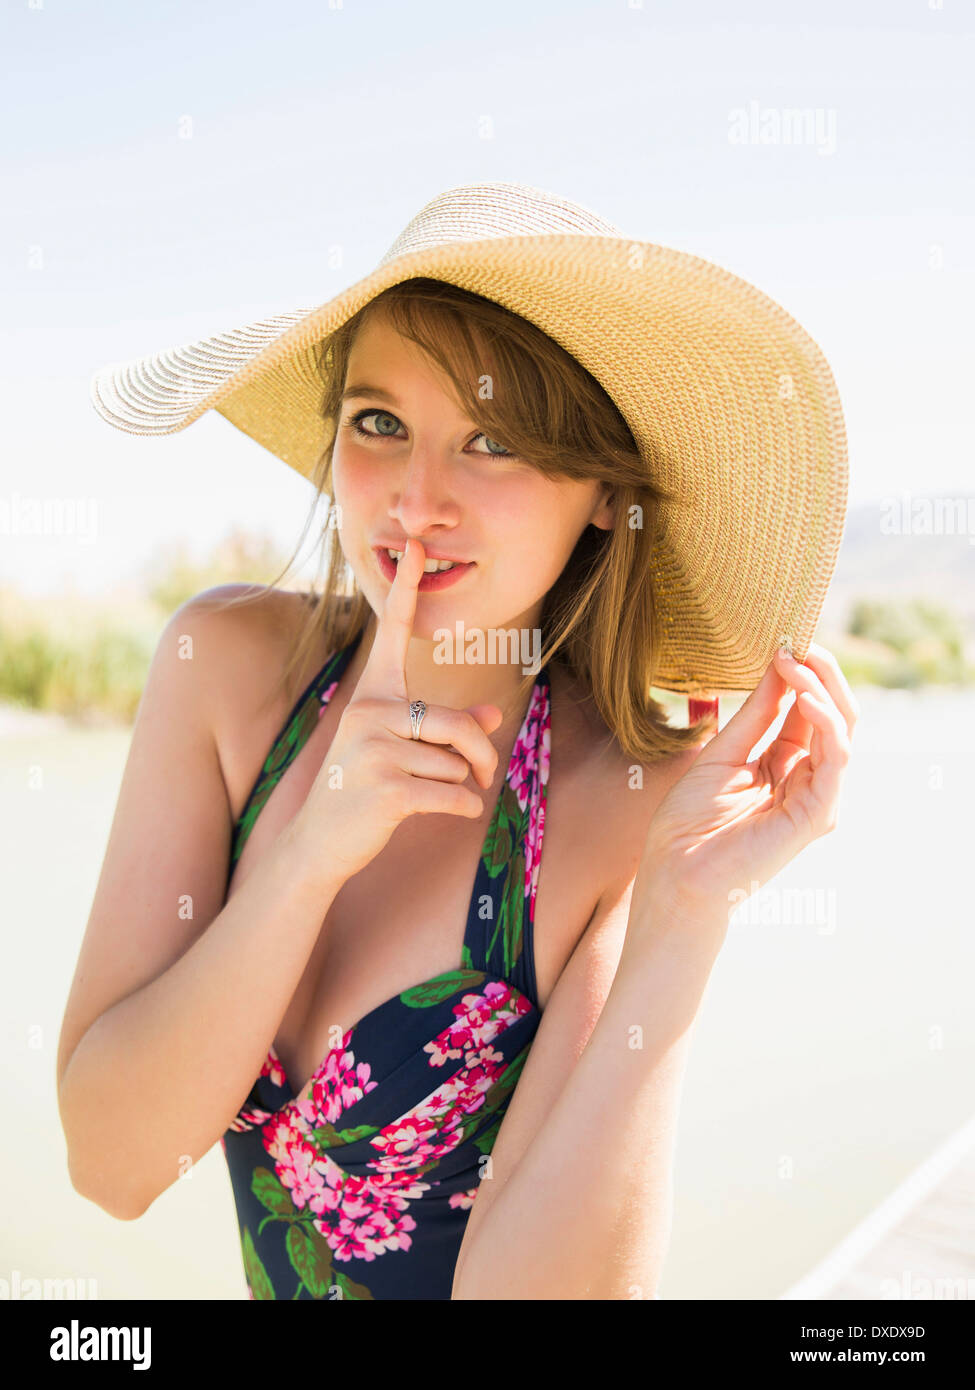 Ritratto di giovane donna che indossa cappello per il sole sulla spiaggia, Salt Lake City, Utah, Stati Uniti d'America Foto Stock